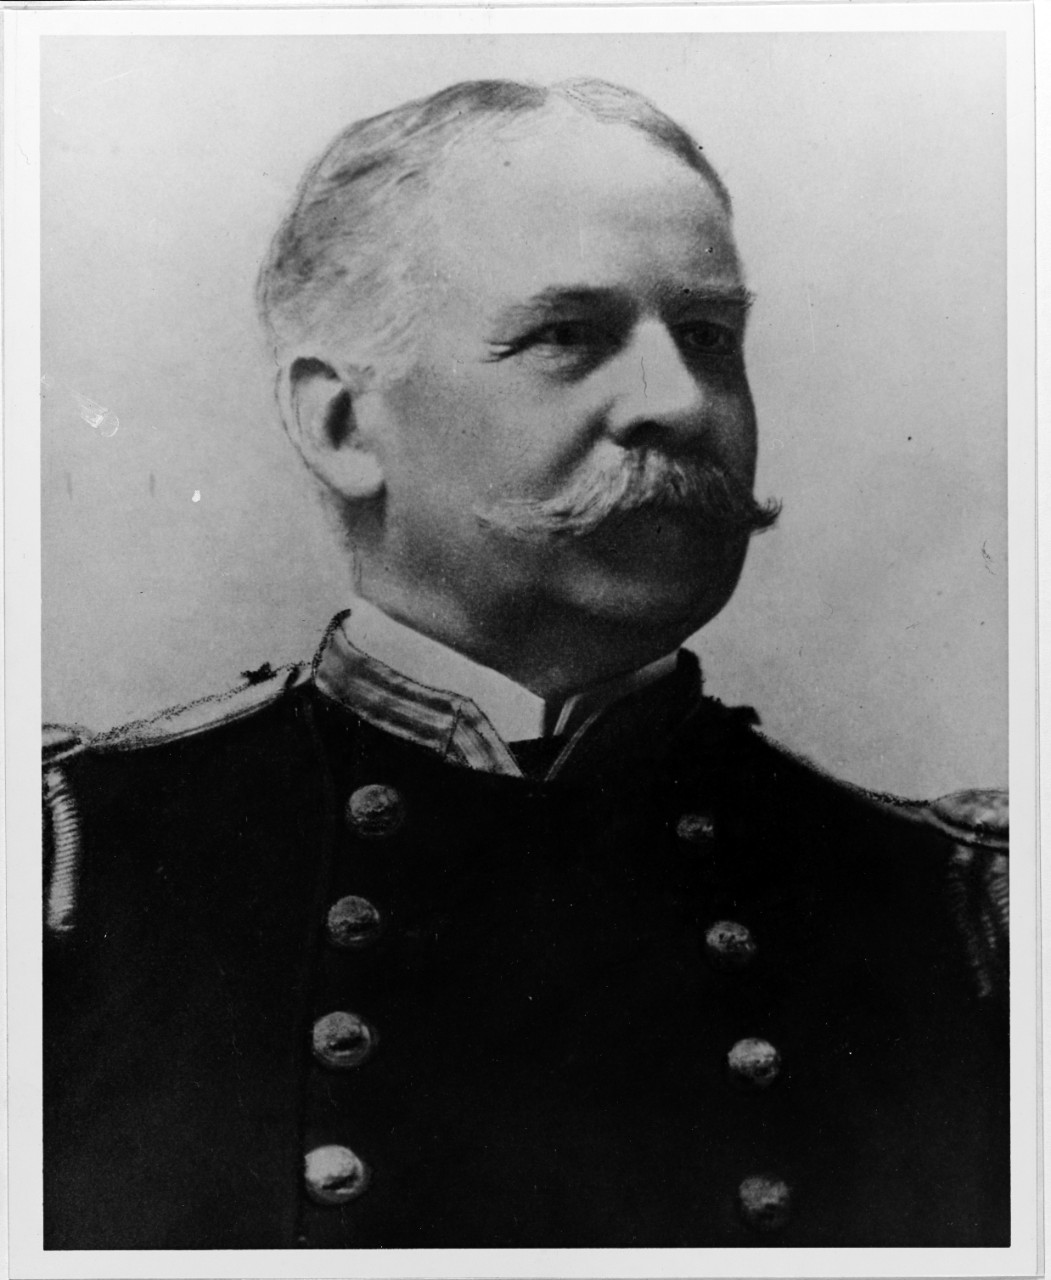 Captain Frederick V. McNair, Sr., USN